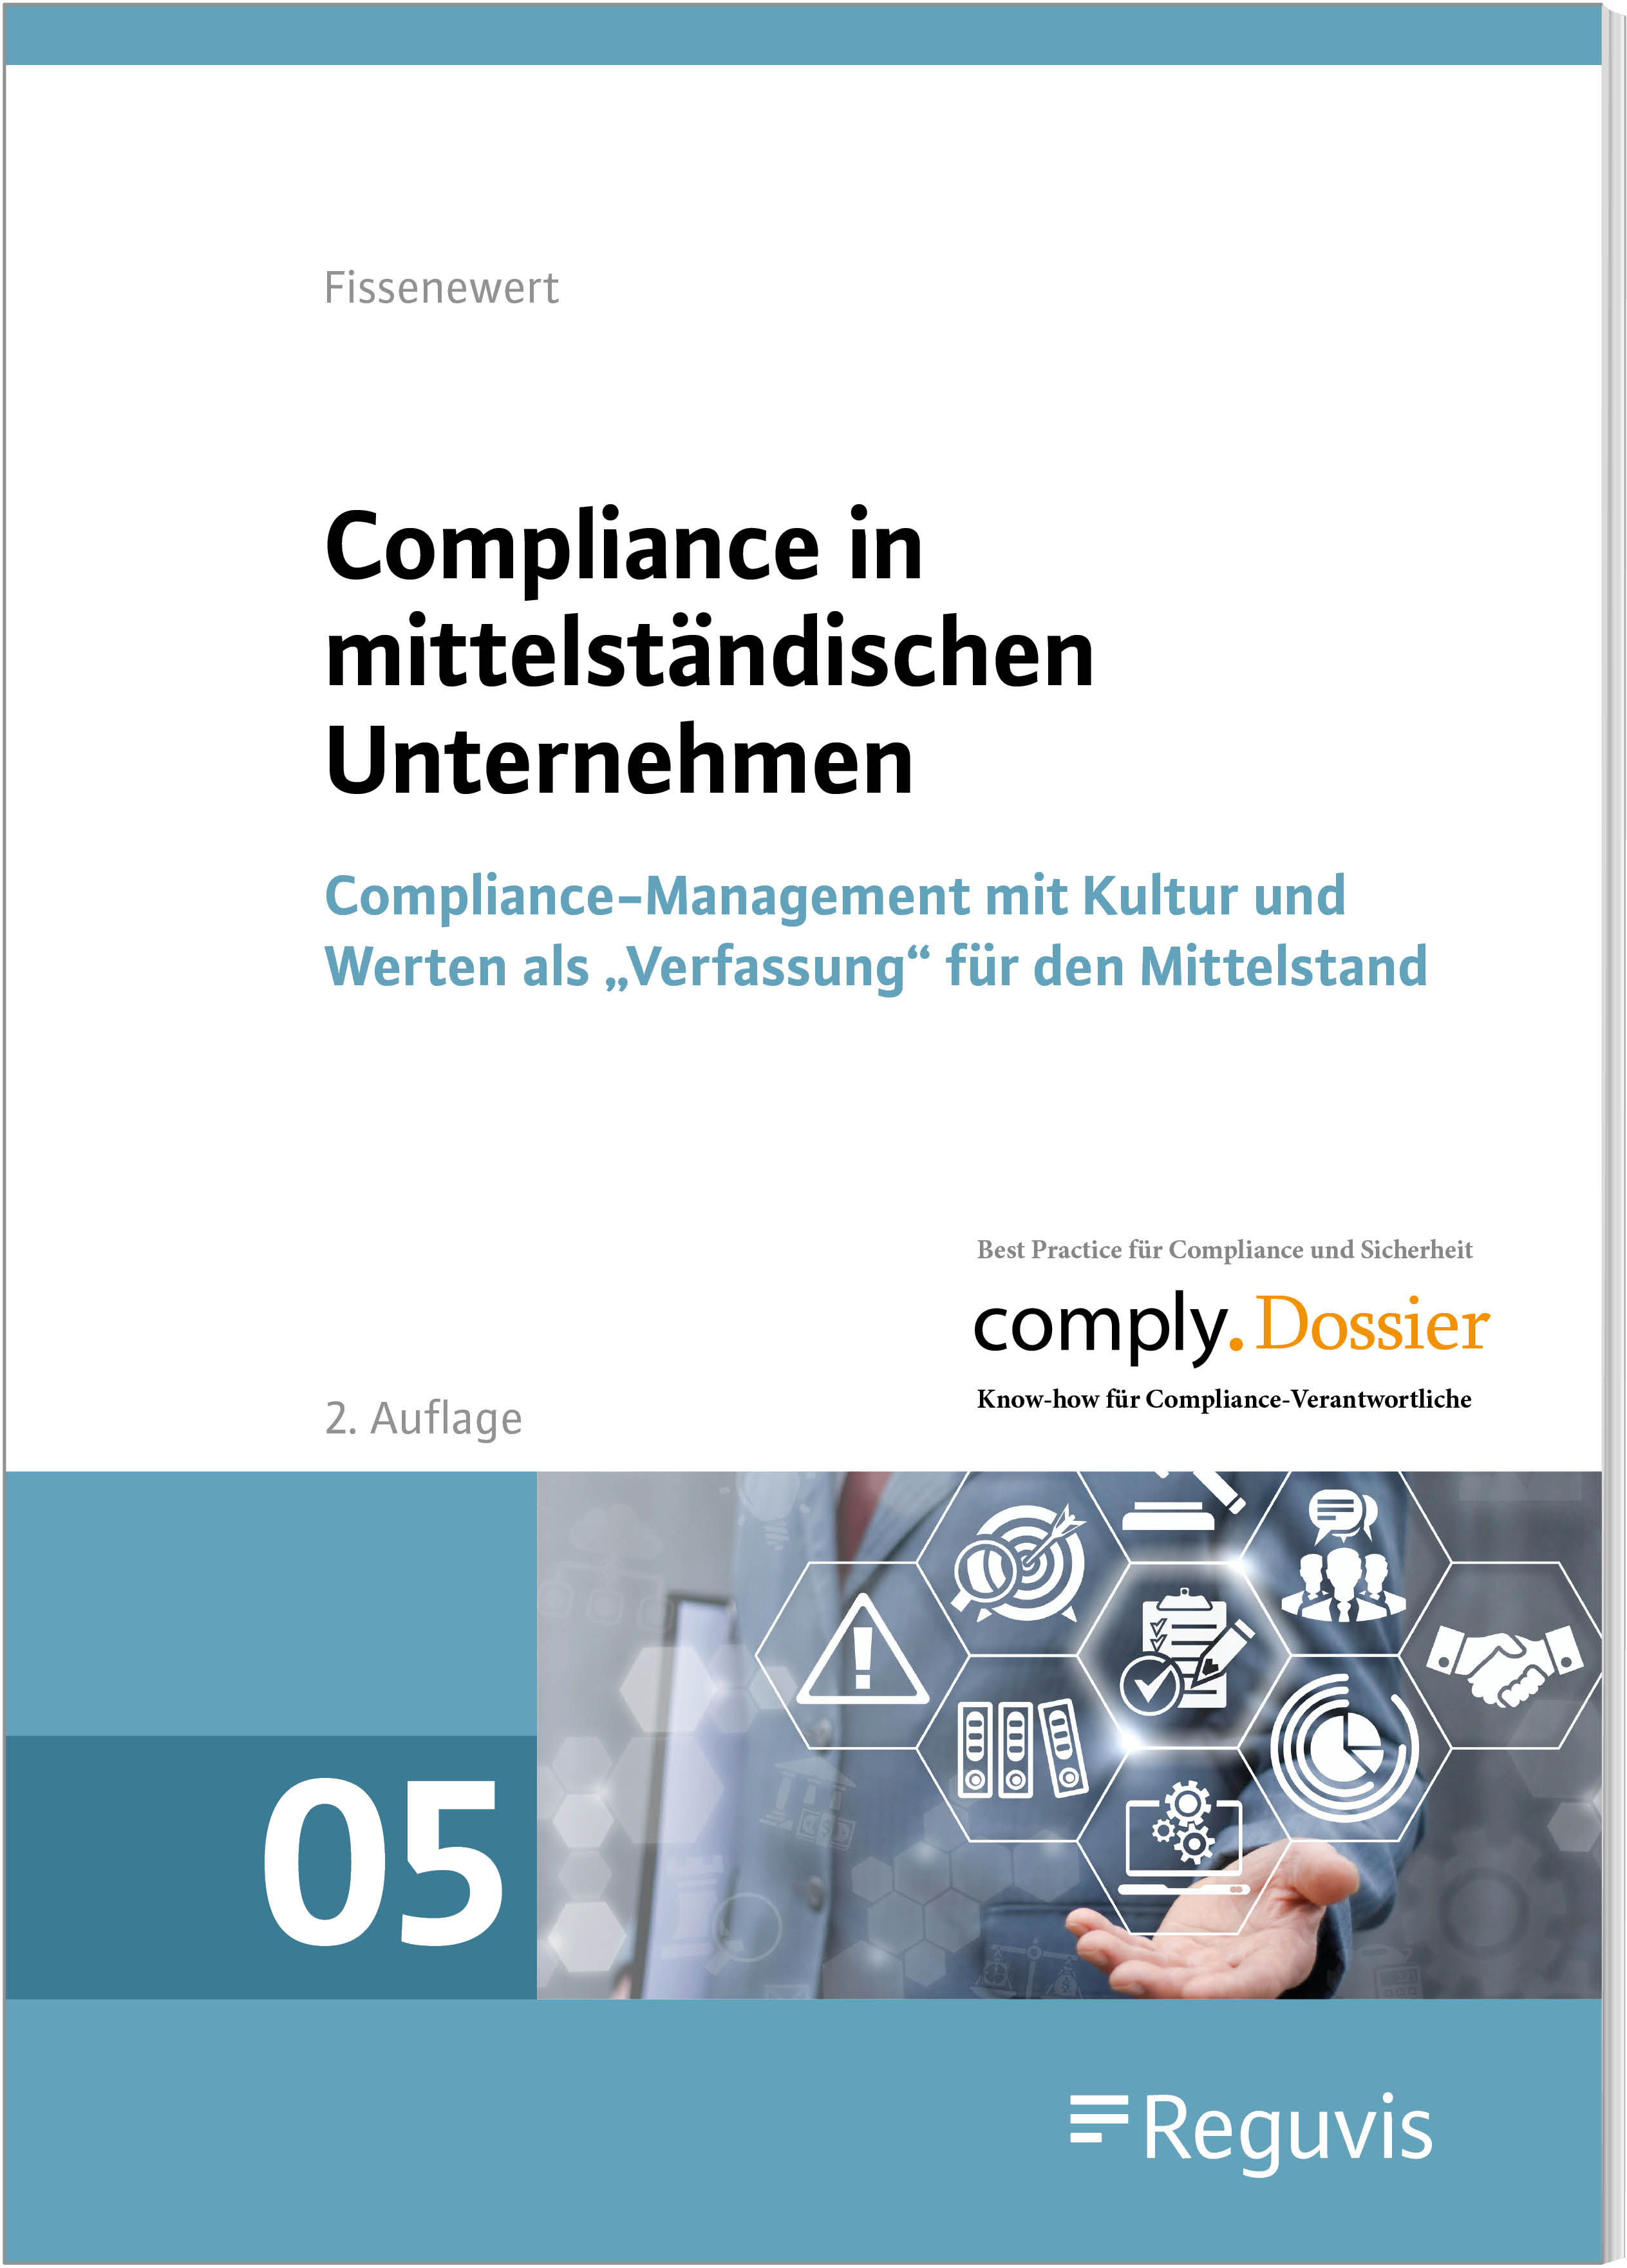 Compliance in mittelständischen Unternehmen